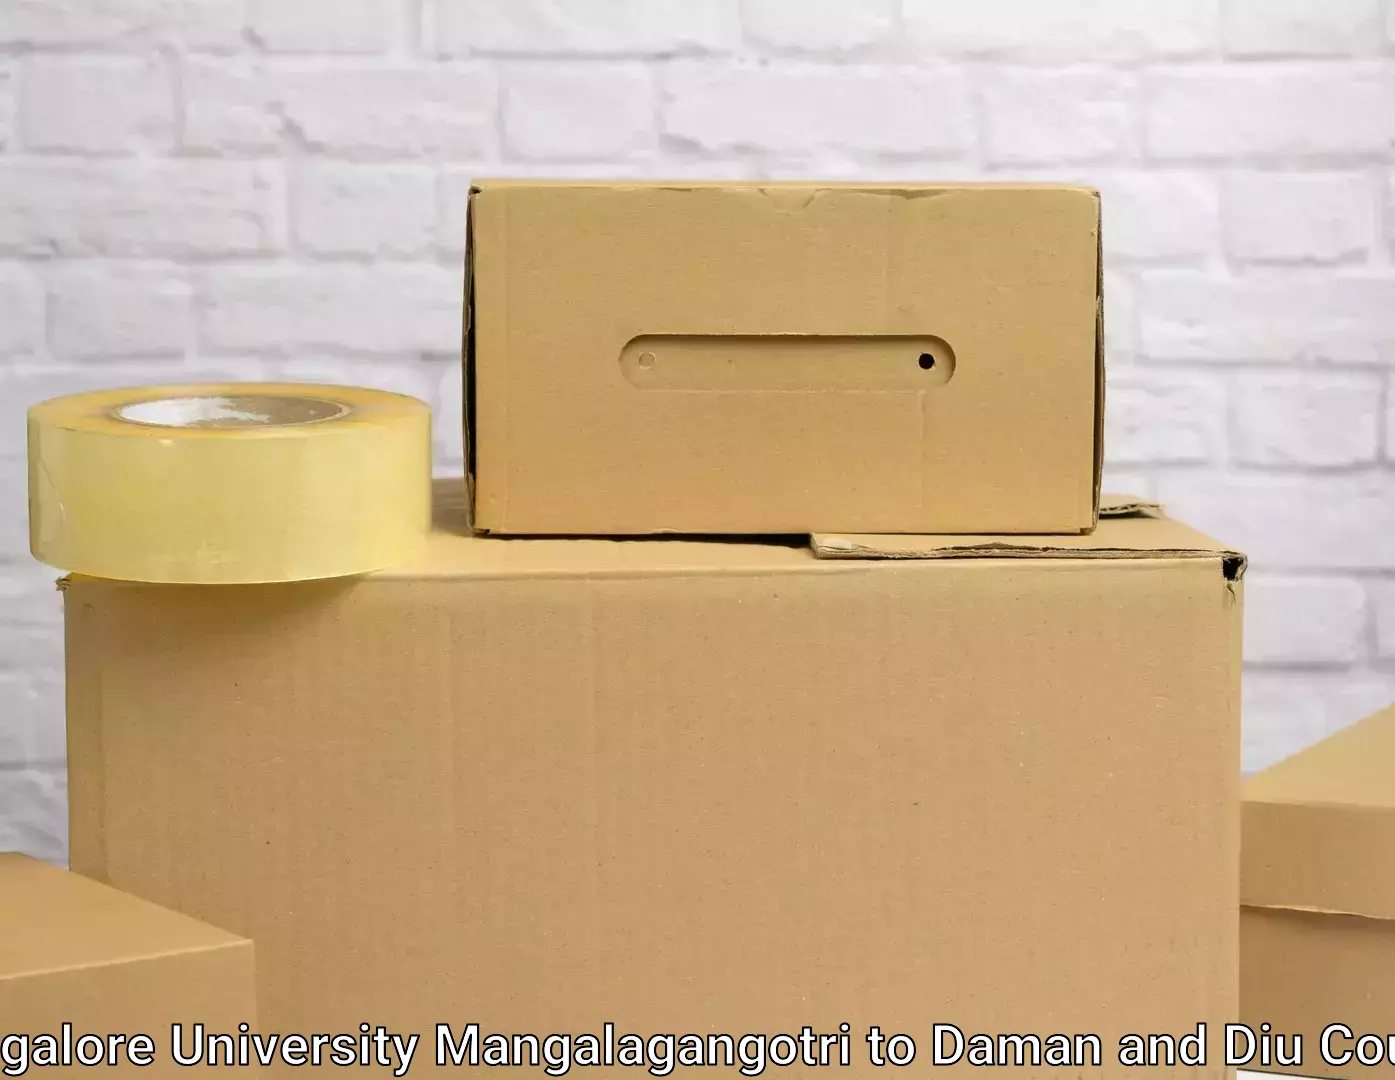 Professional movers Mangalore University Mangalagangotri to Daman and Diu